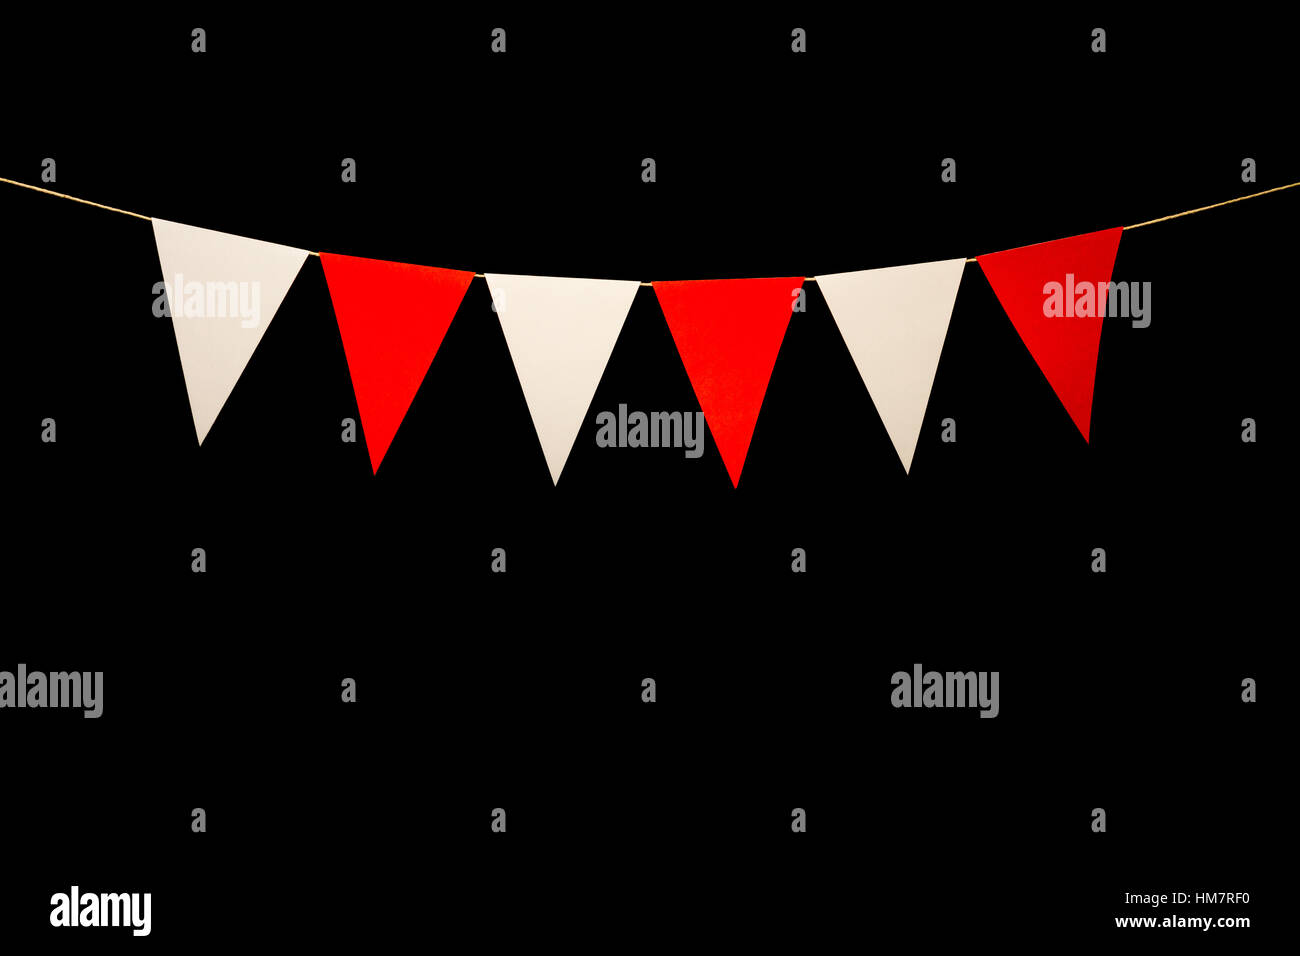 String mit sechs rote und weiße Dreiecken Ammer. Fügen Sie Ihre eigenen Charaktere nach Titel oder Banner. Stockfoto